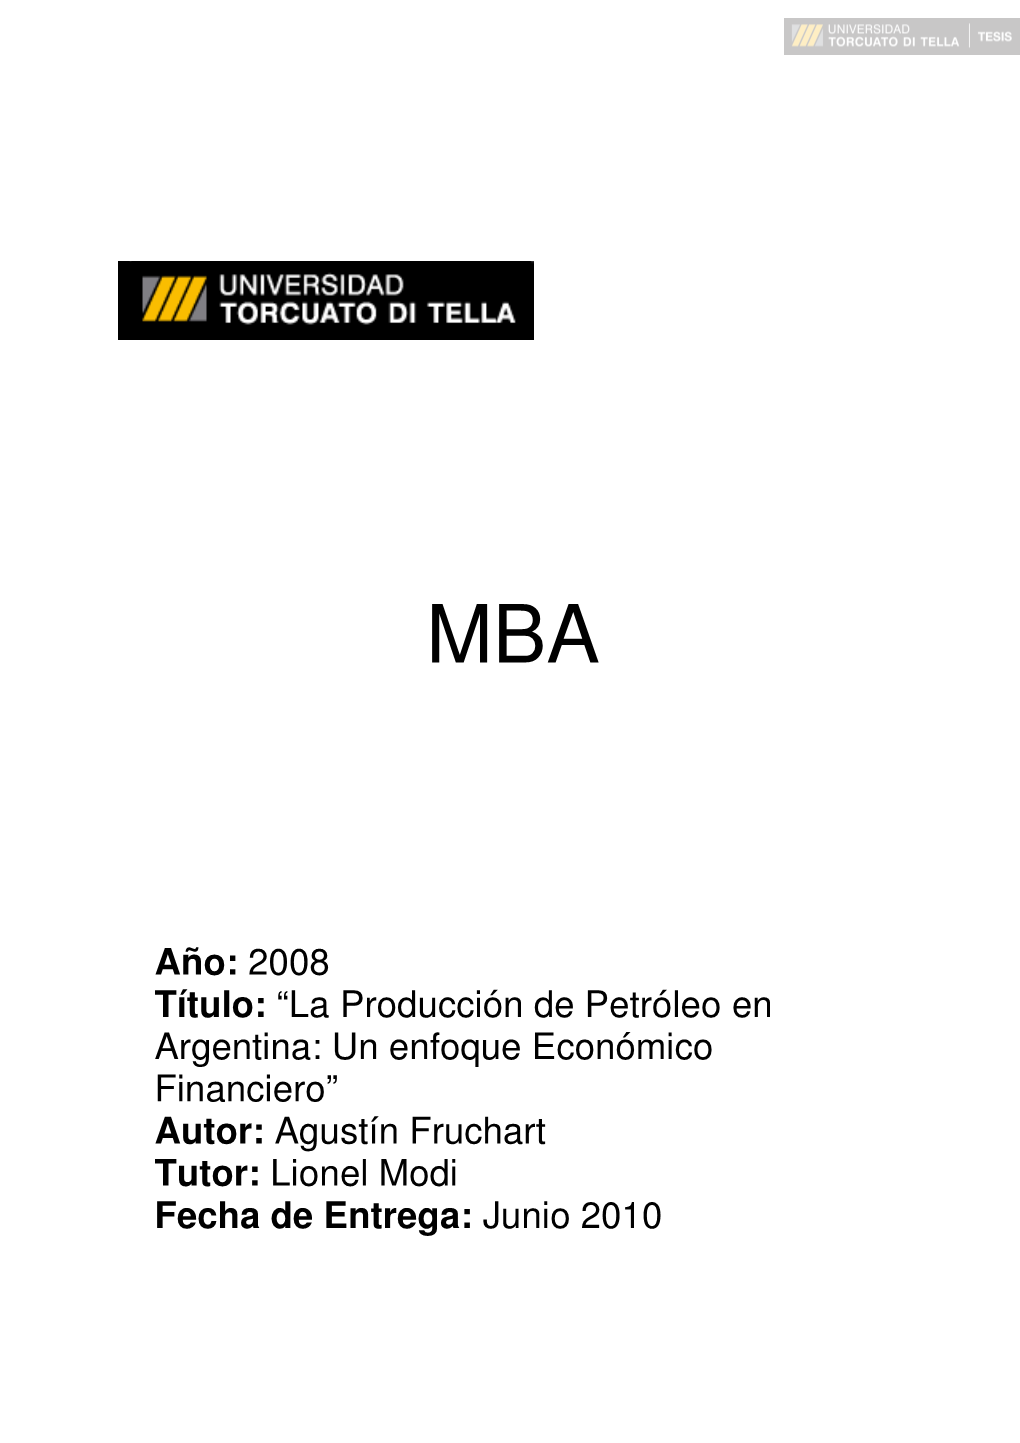 Año: 2008 Título: “La Producción De Petróleo En Argentina: Un Enfoque Económico Financiero” Autor: Agustín Fruchart Tutor: Lionel Modi Fecha De Entrega: Junio 2010